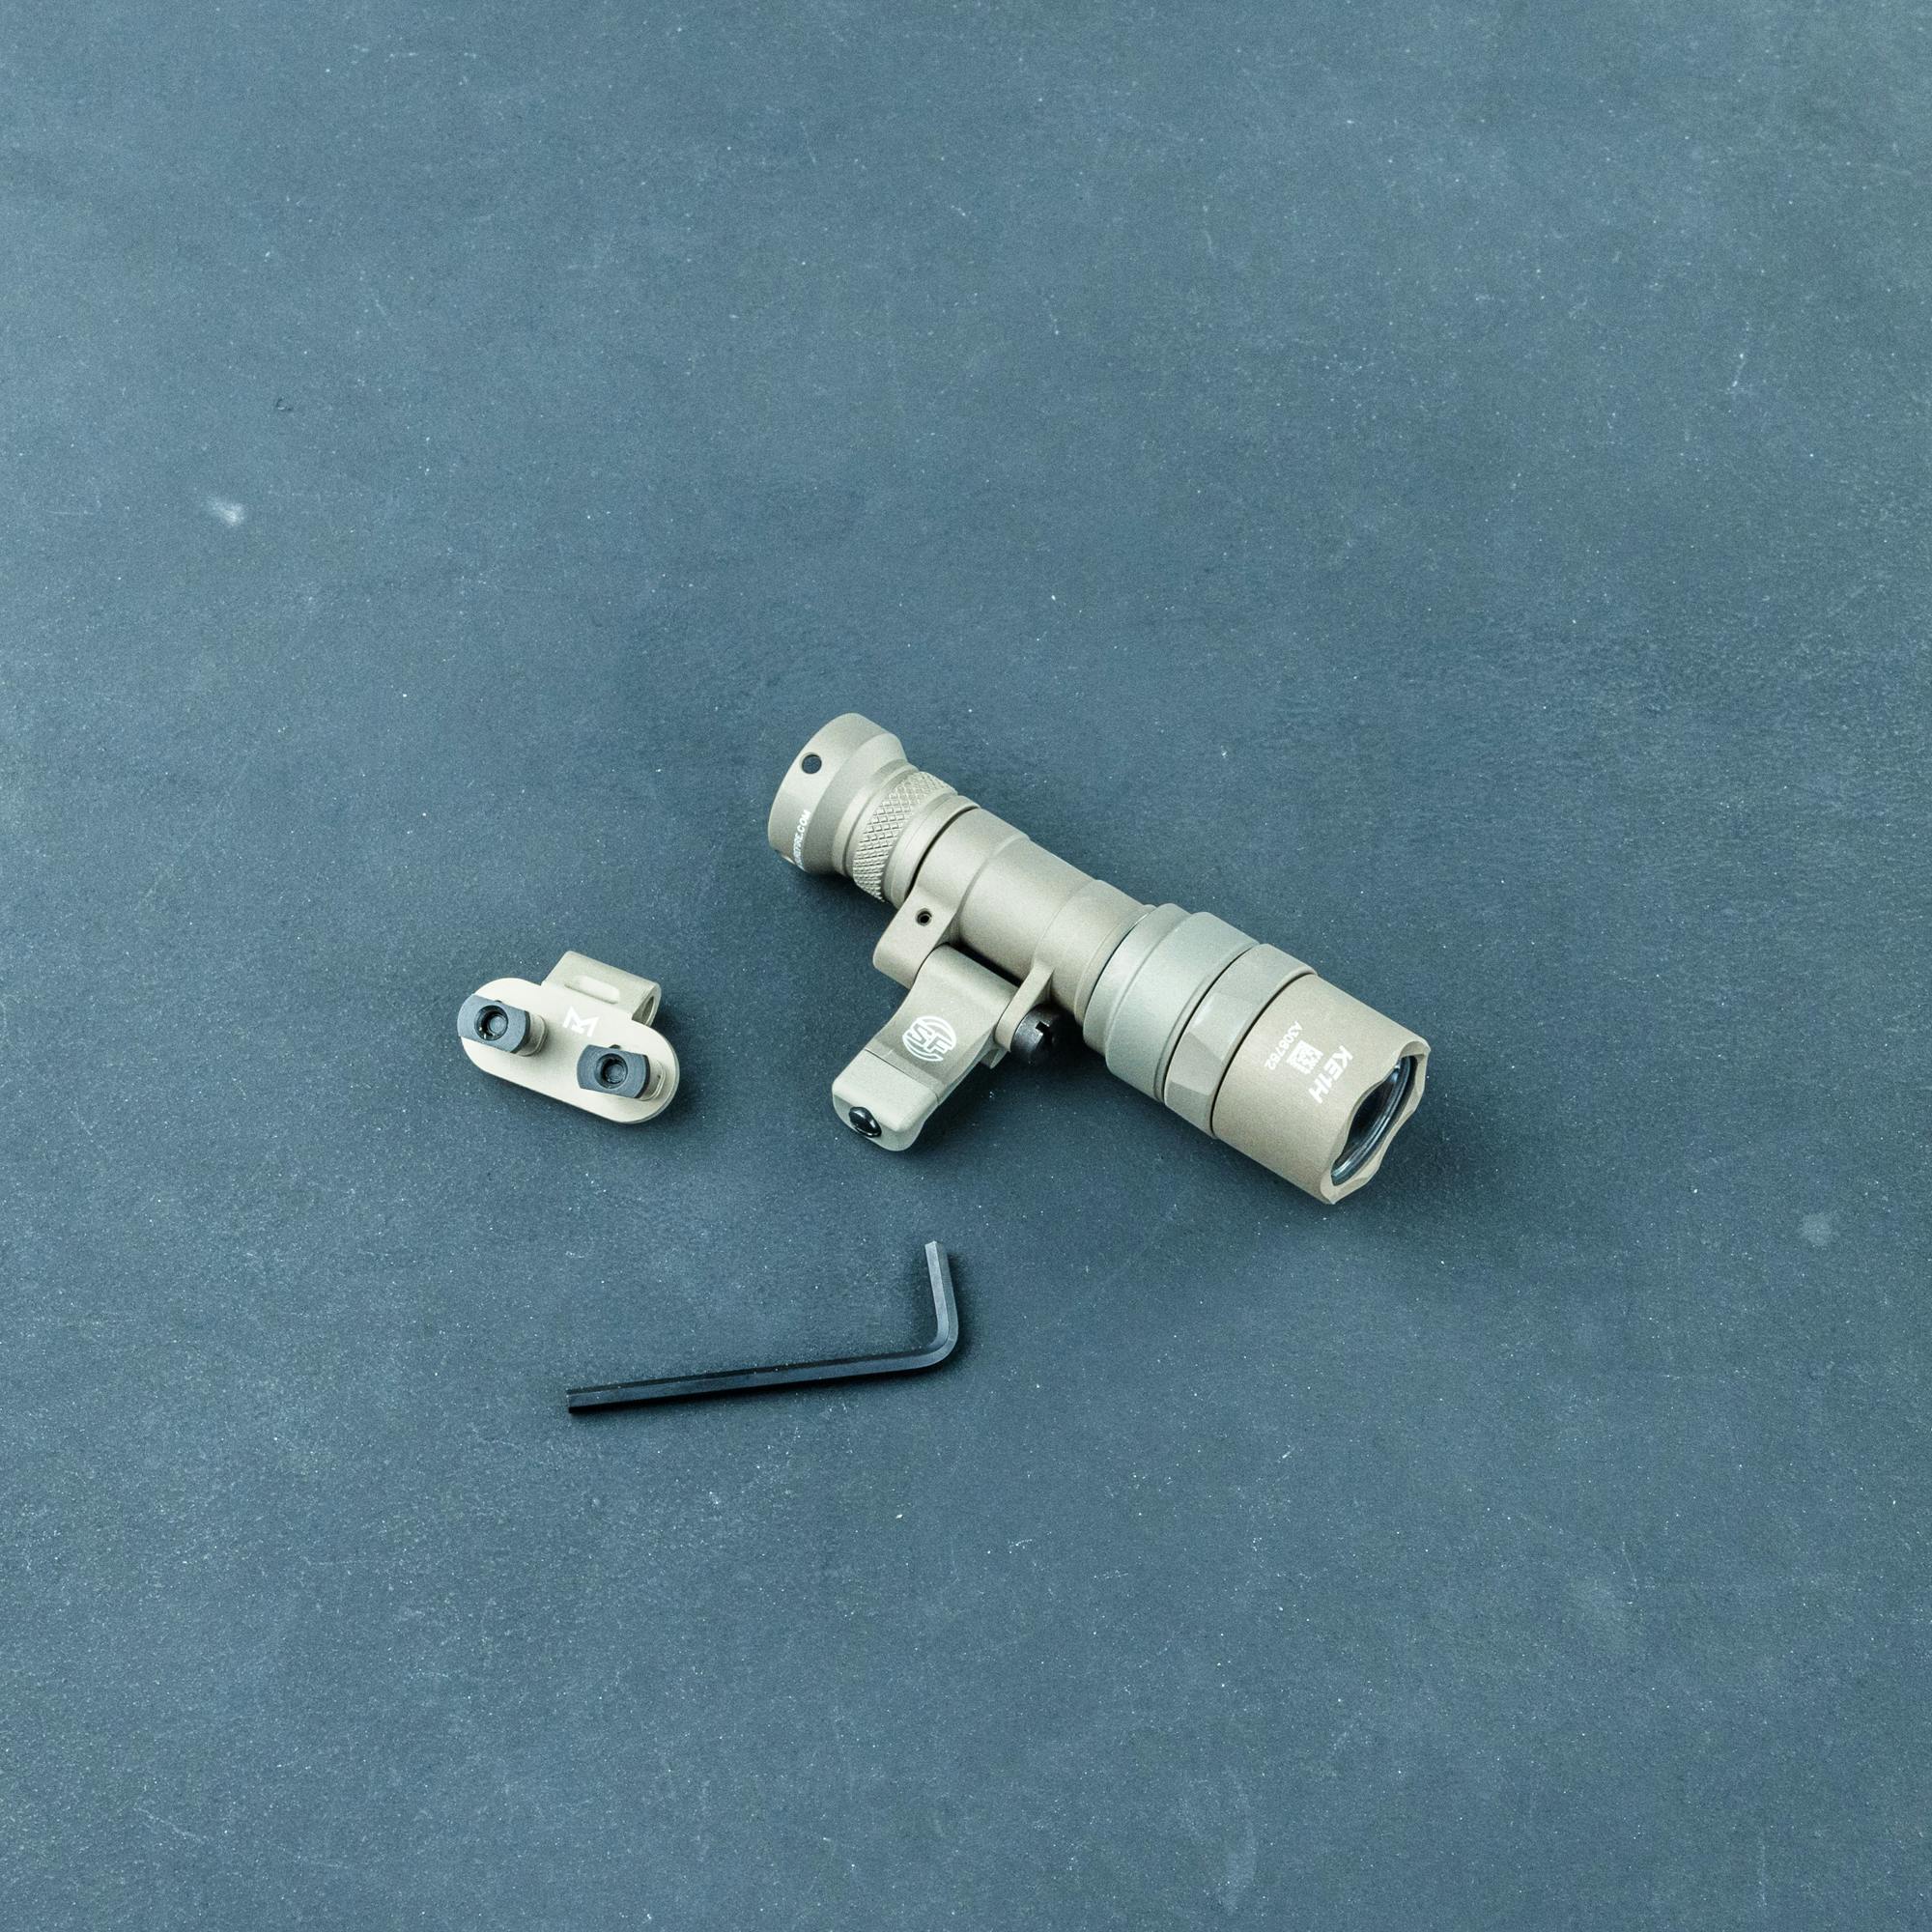 SureFire M340C Mini Scout Light PRO – ARMS